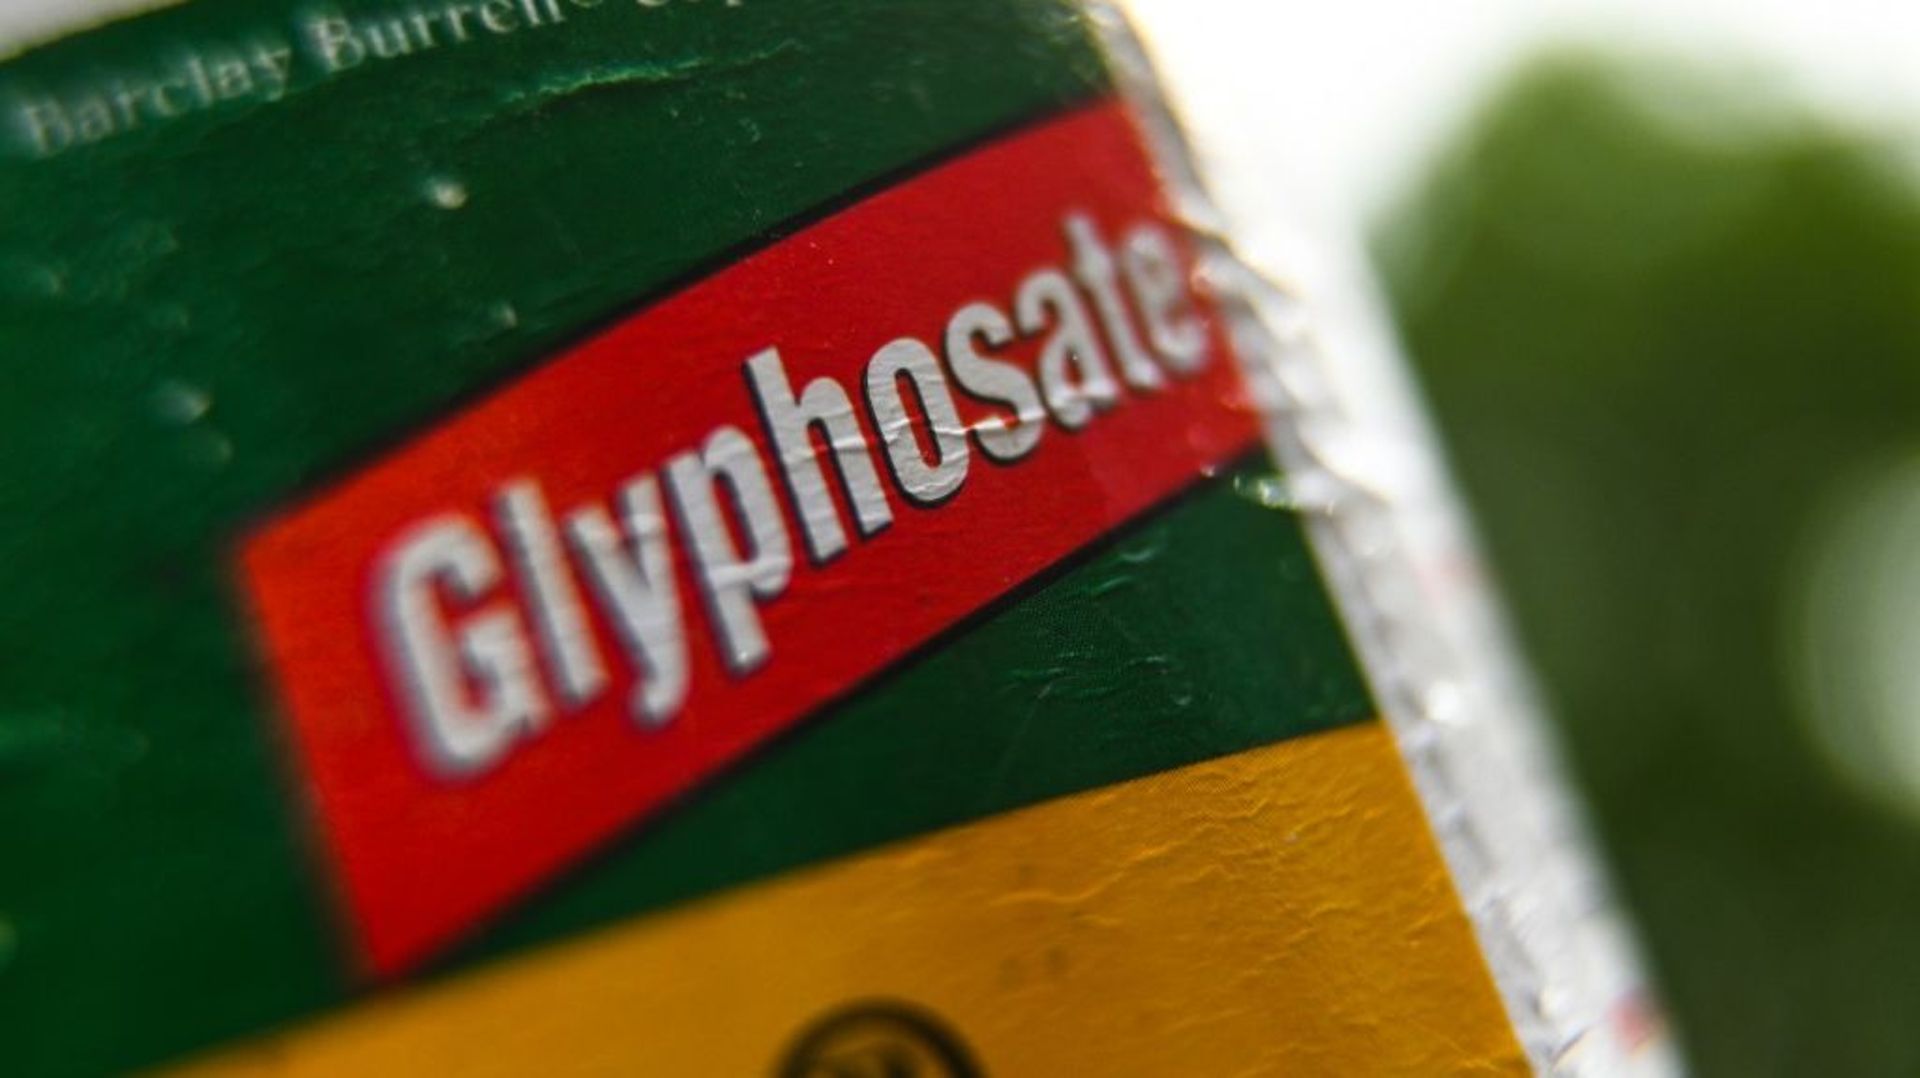 Le Luxembourg va devenir le premier pays de l'Union européenne à bannir le glyphosate